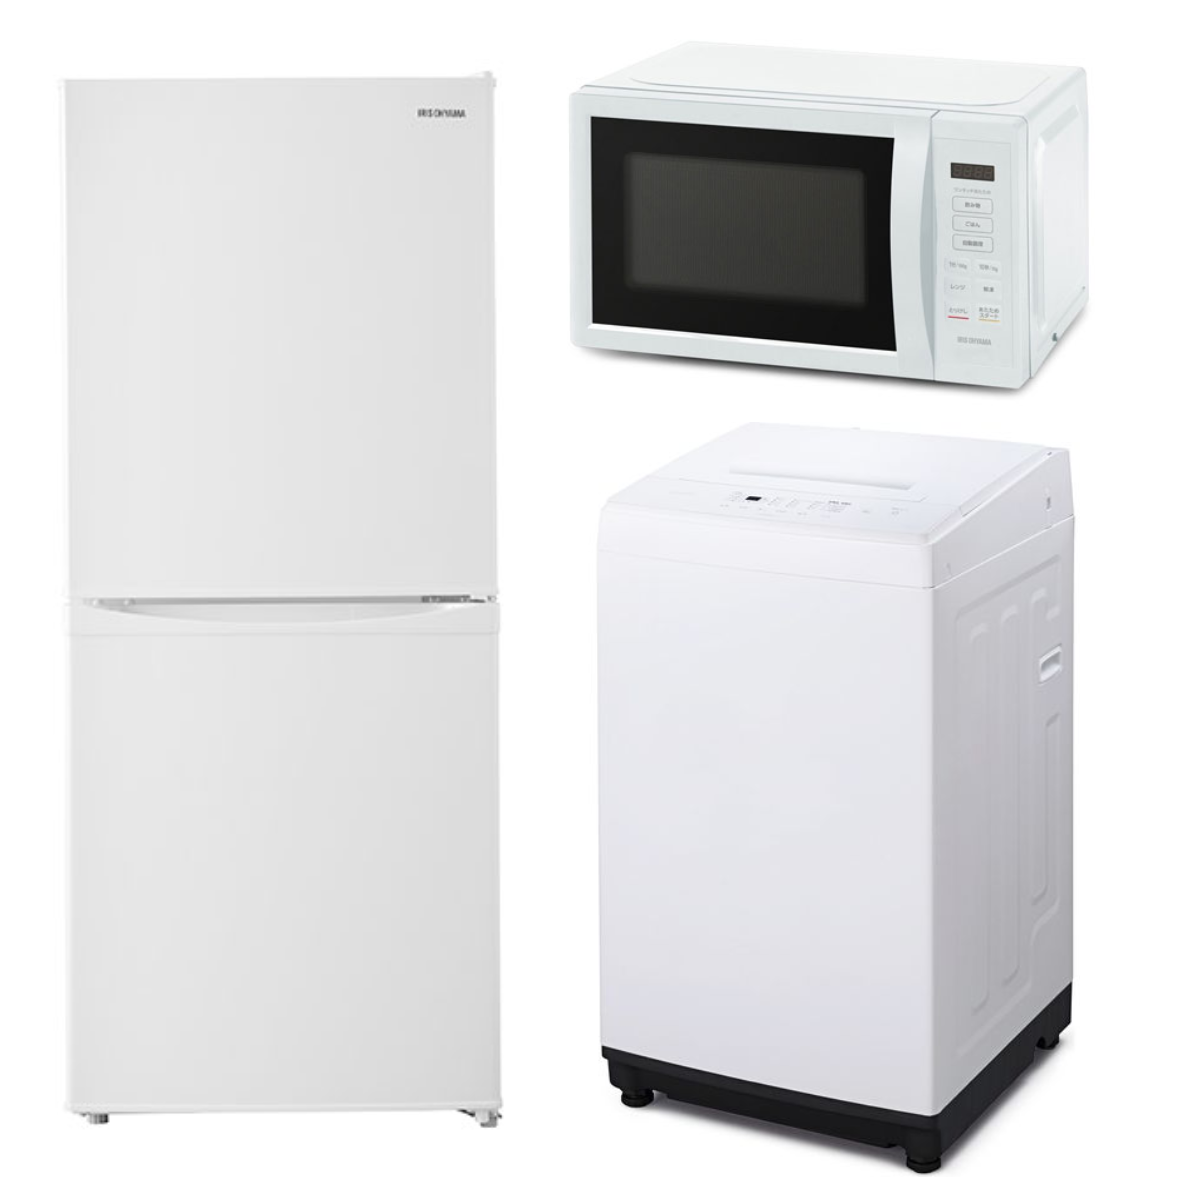 【アイリスオーヤマ】家電3点セット冷蔵庫・洗濯機・電子レンジ